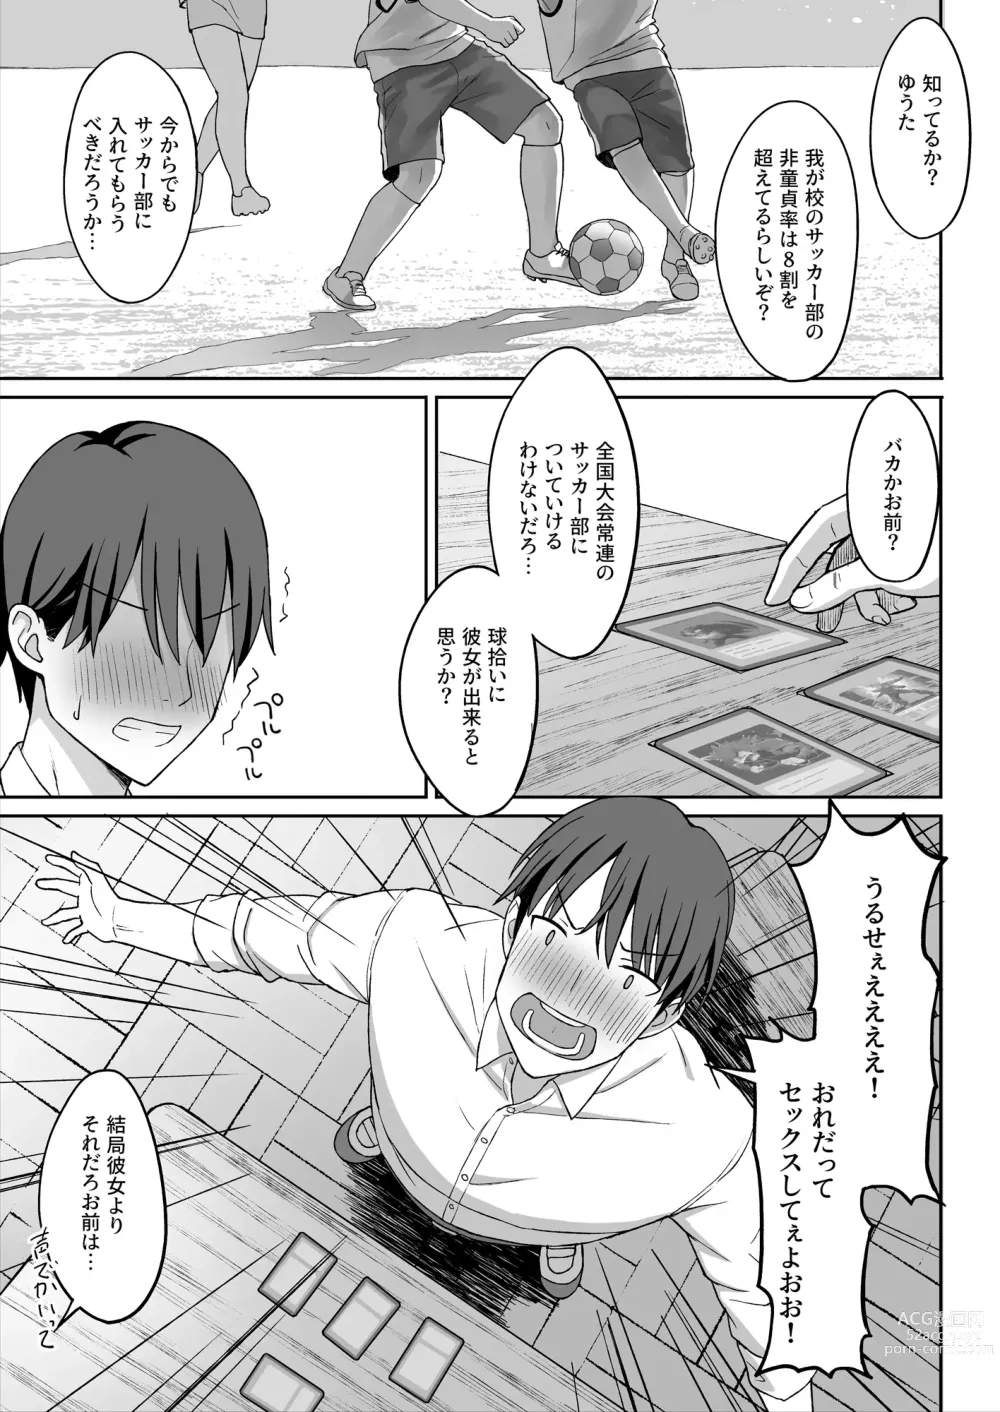 Page 3 of doujinshi 地味巨乳のストーカー女に告白されたのでヤりまくってみた話